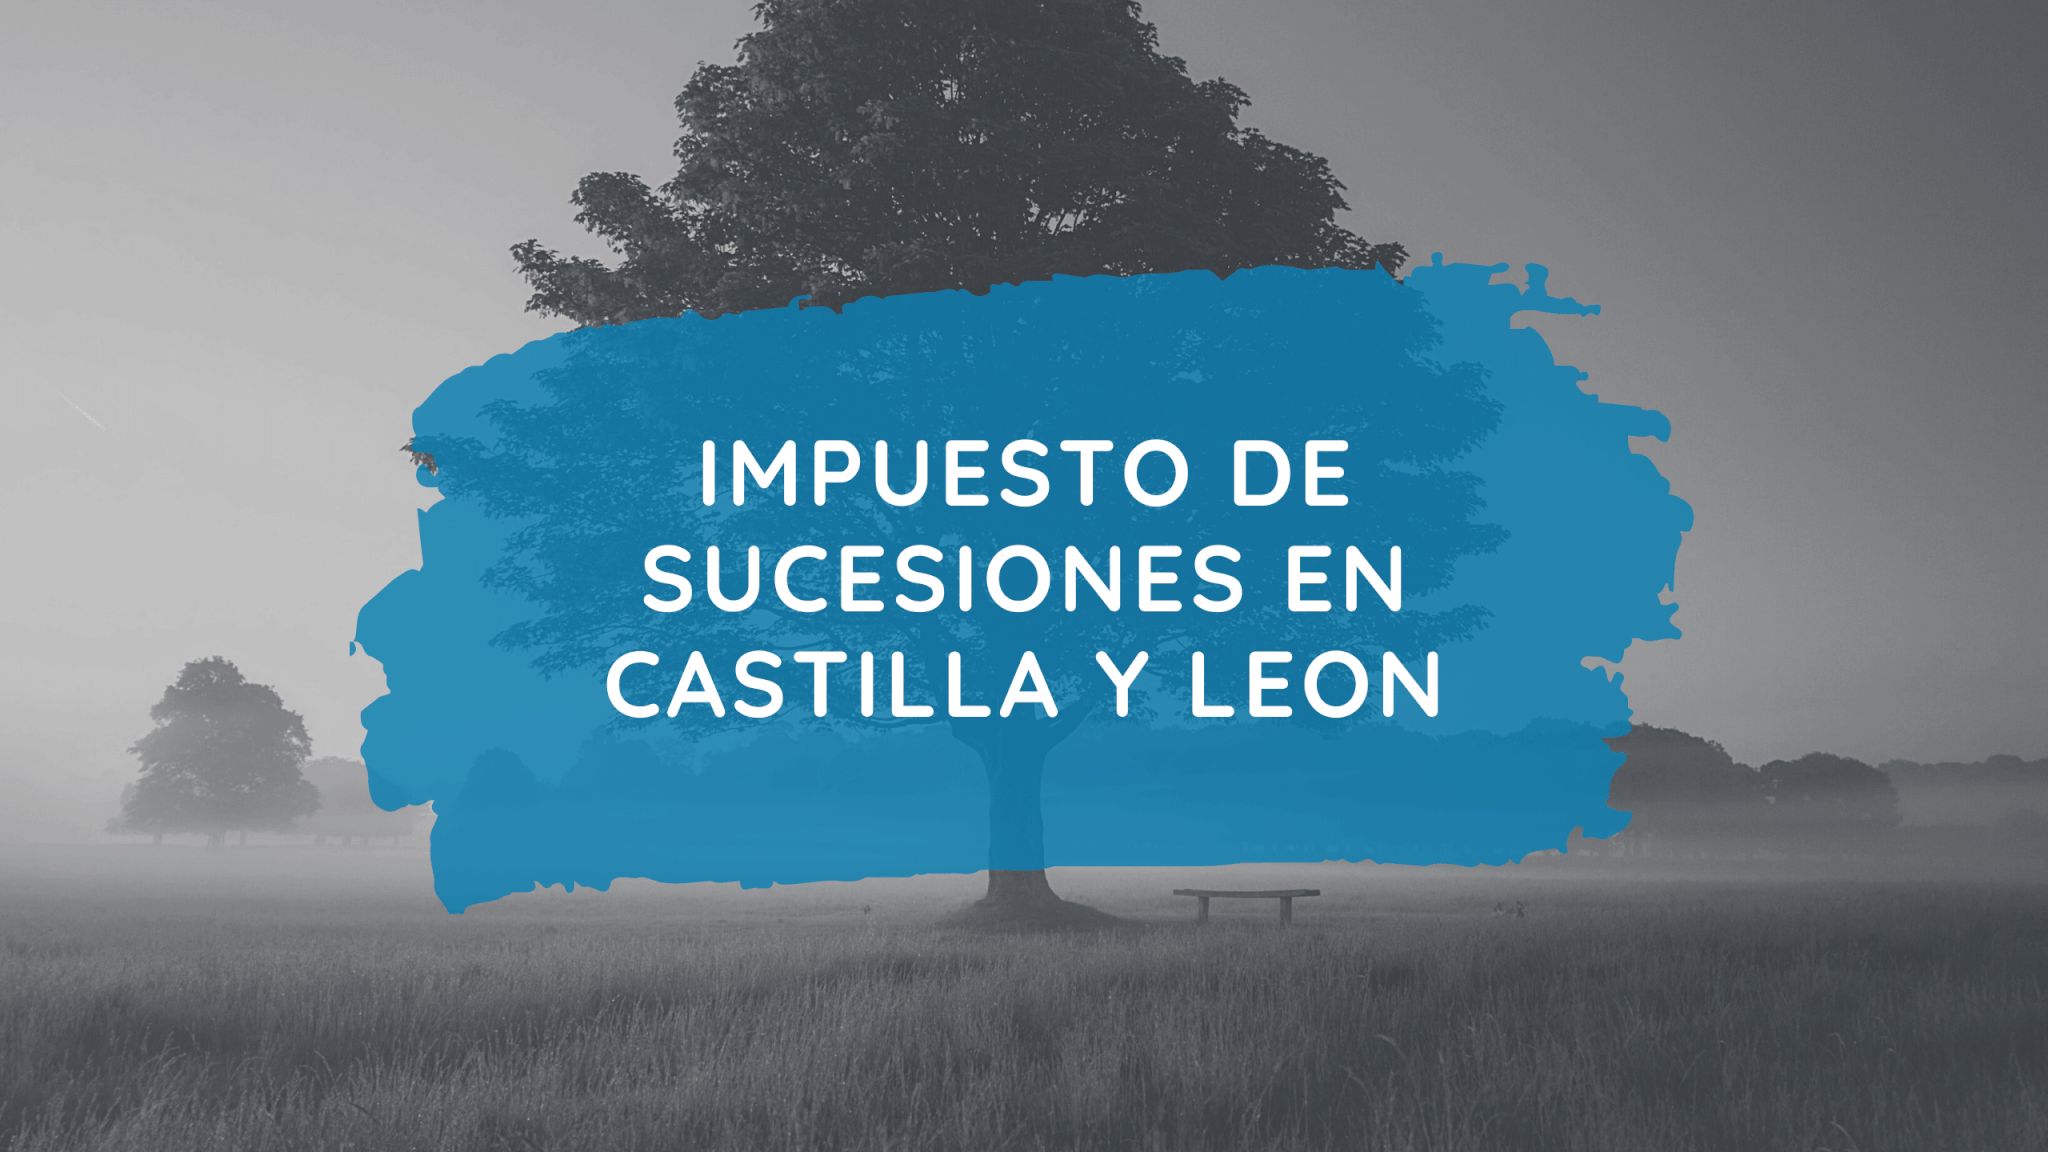 Impuesto De Sucesiones En Castilla Y Leon Leggado